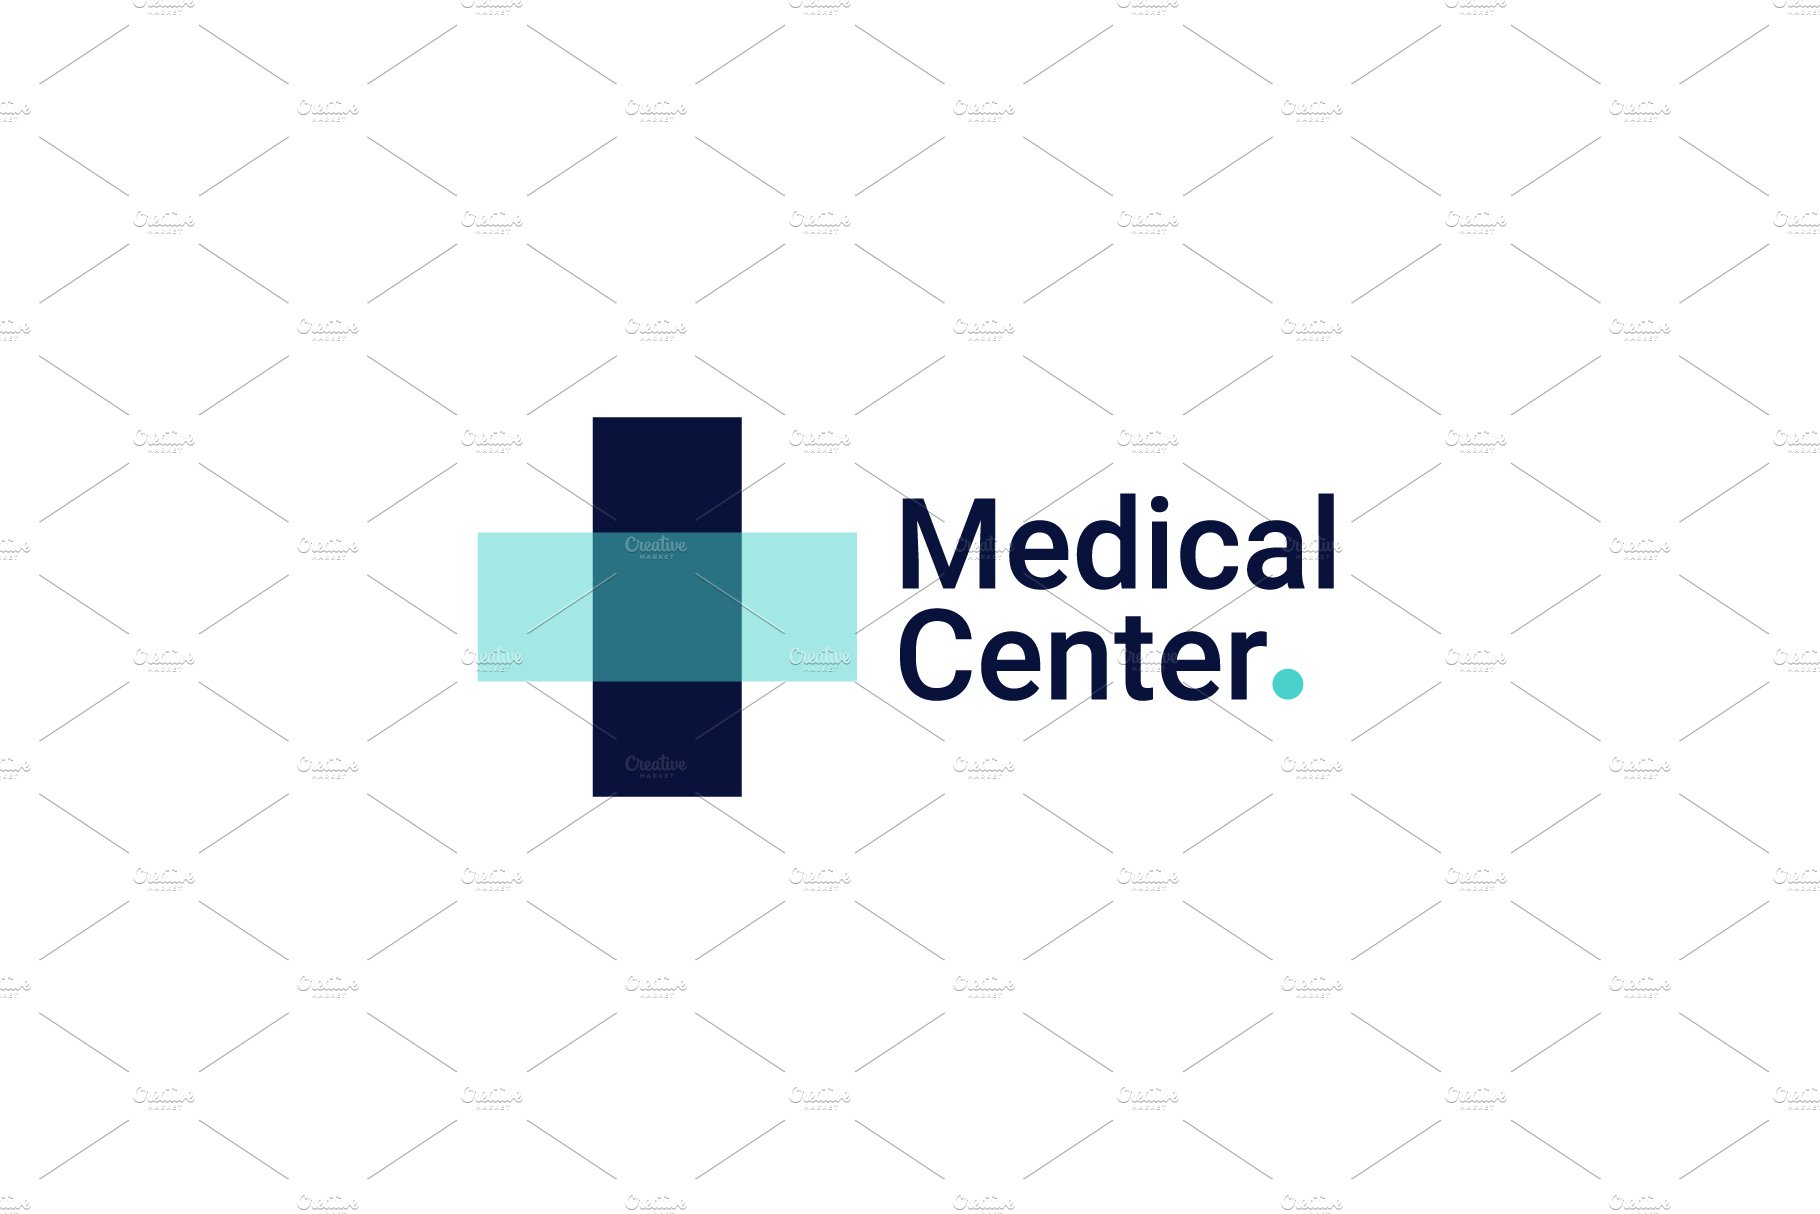 Medical Center Logo Vector Icon cover image.